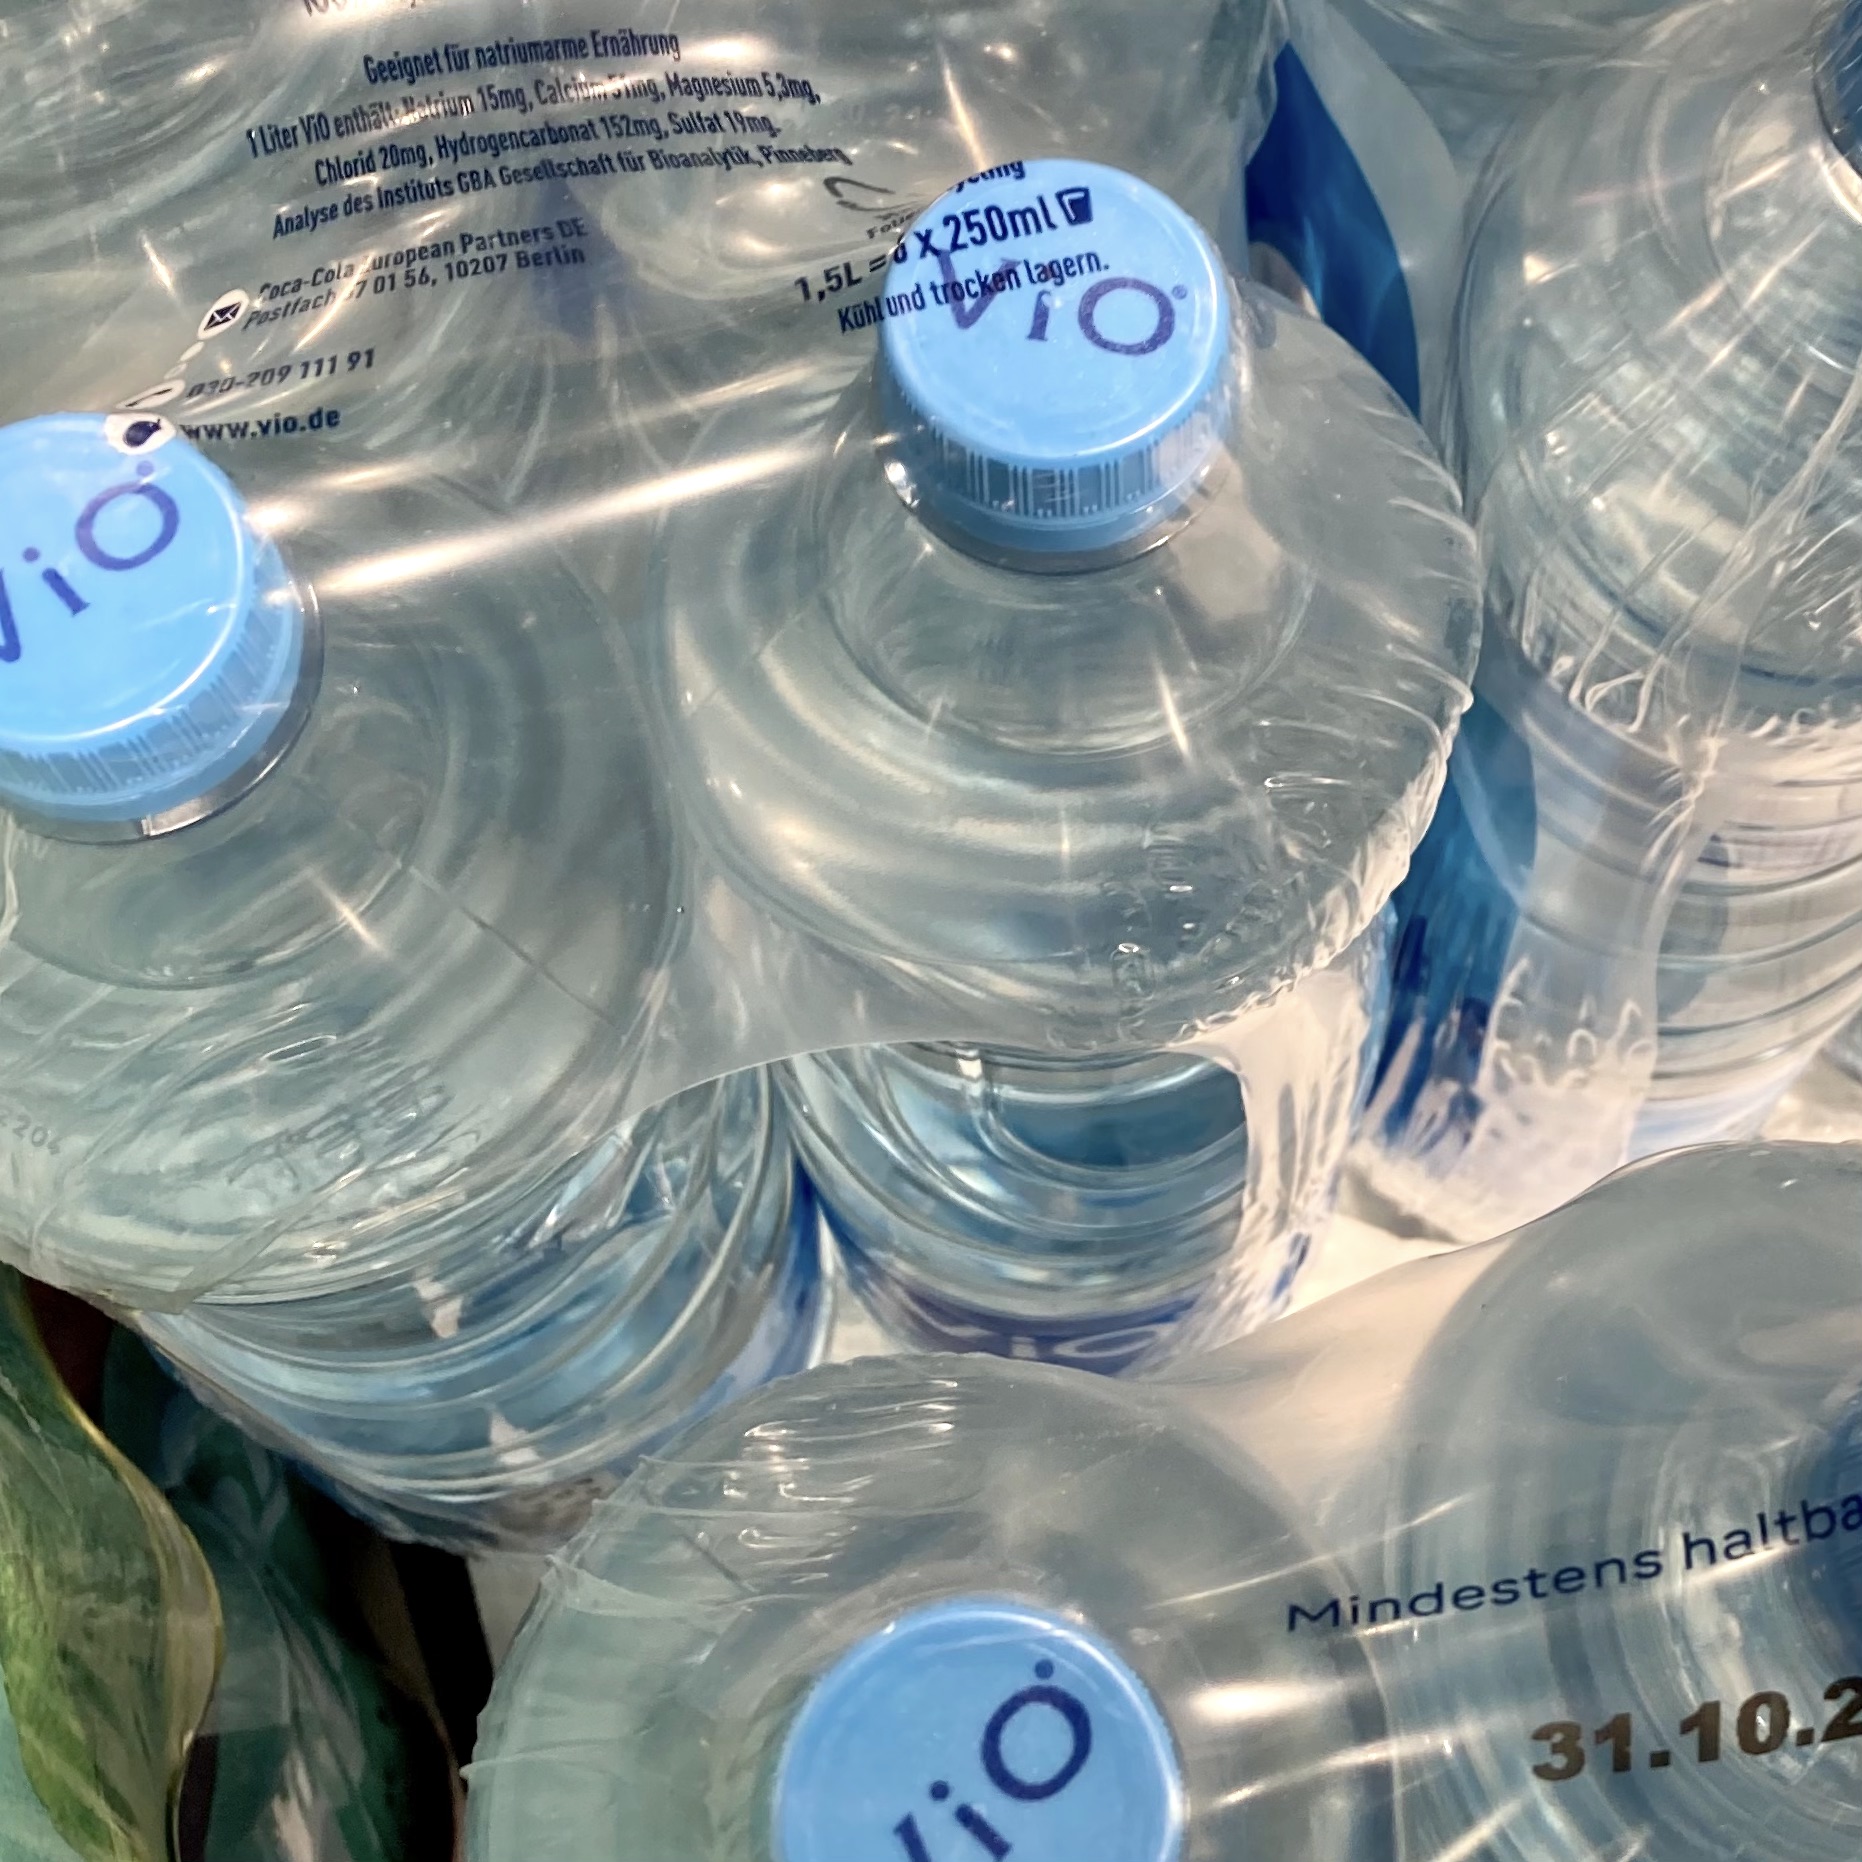 Abgepackte ViO Mineralwasser Flaschen © Krause